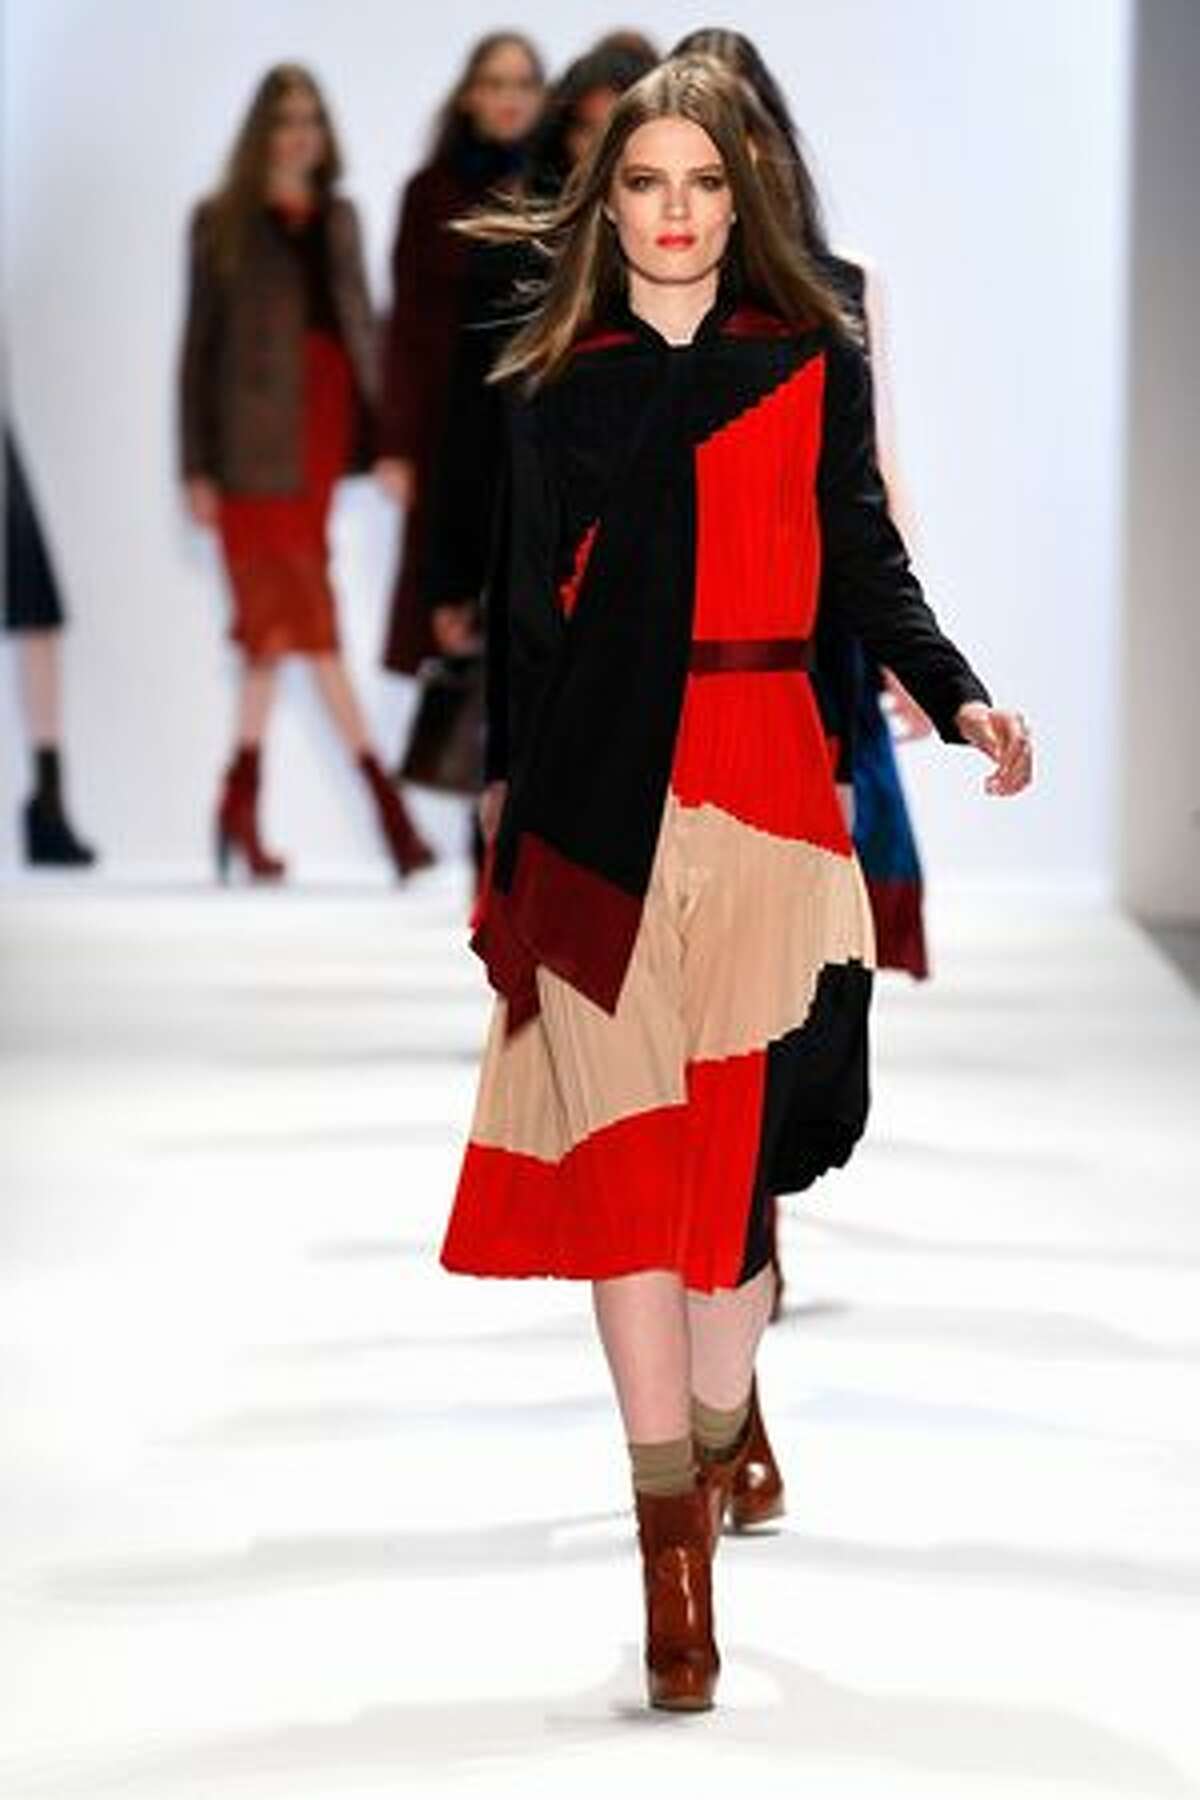 A model walks the runway at the Jill Stuart show.